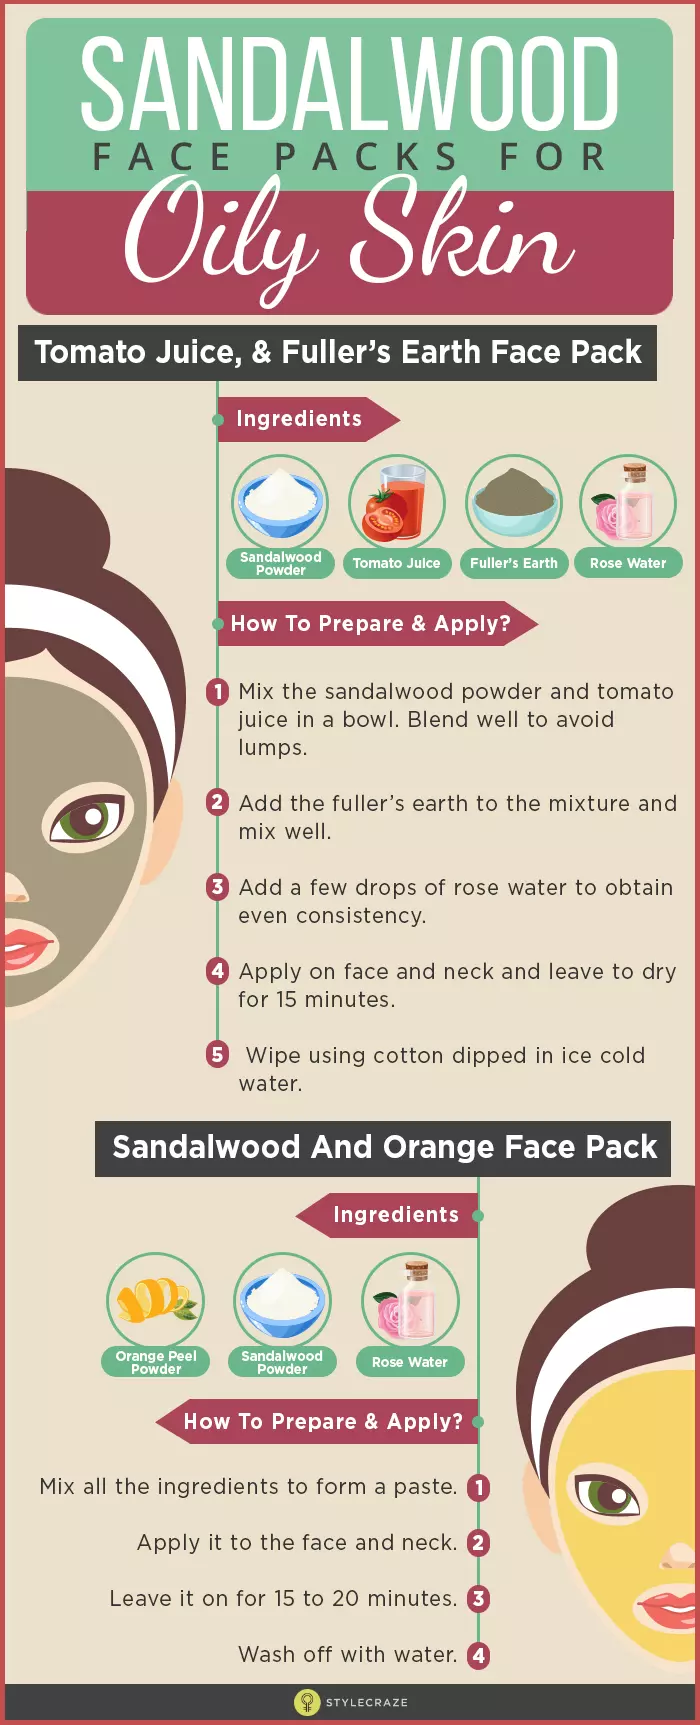 Sandalwood face pack for oily skin